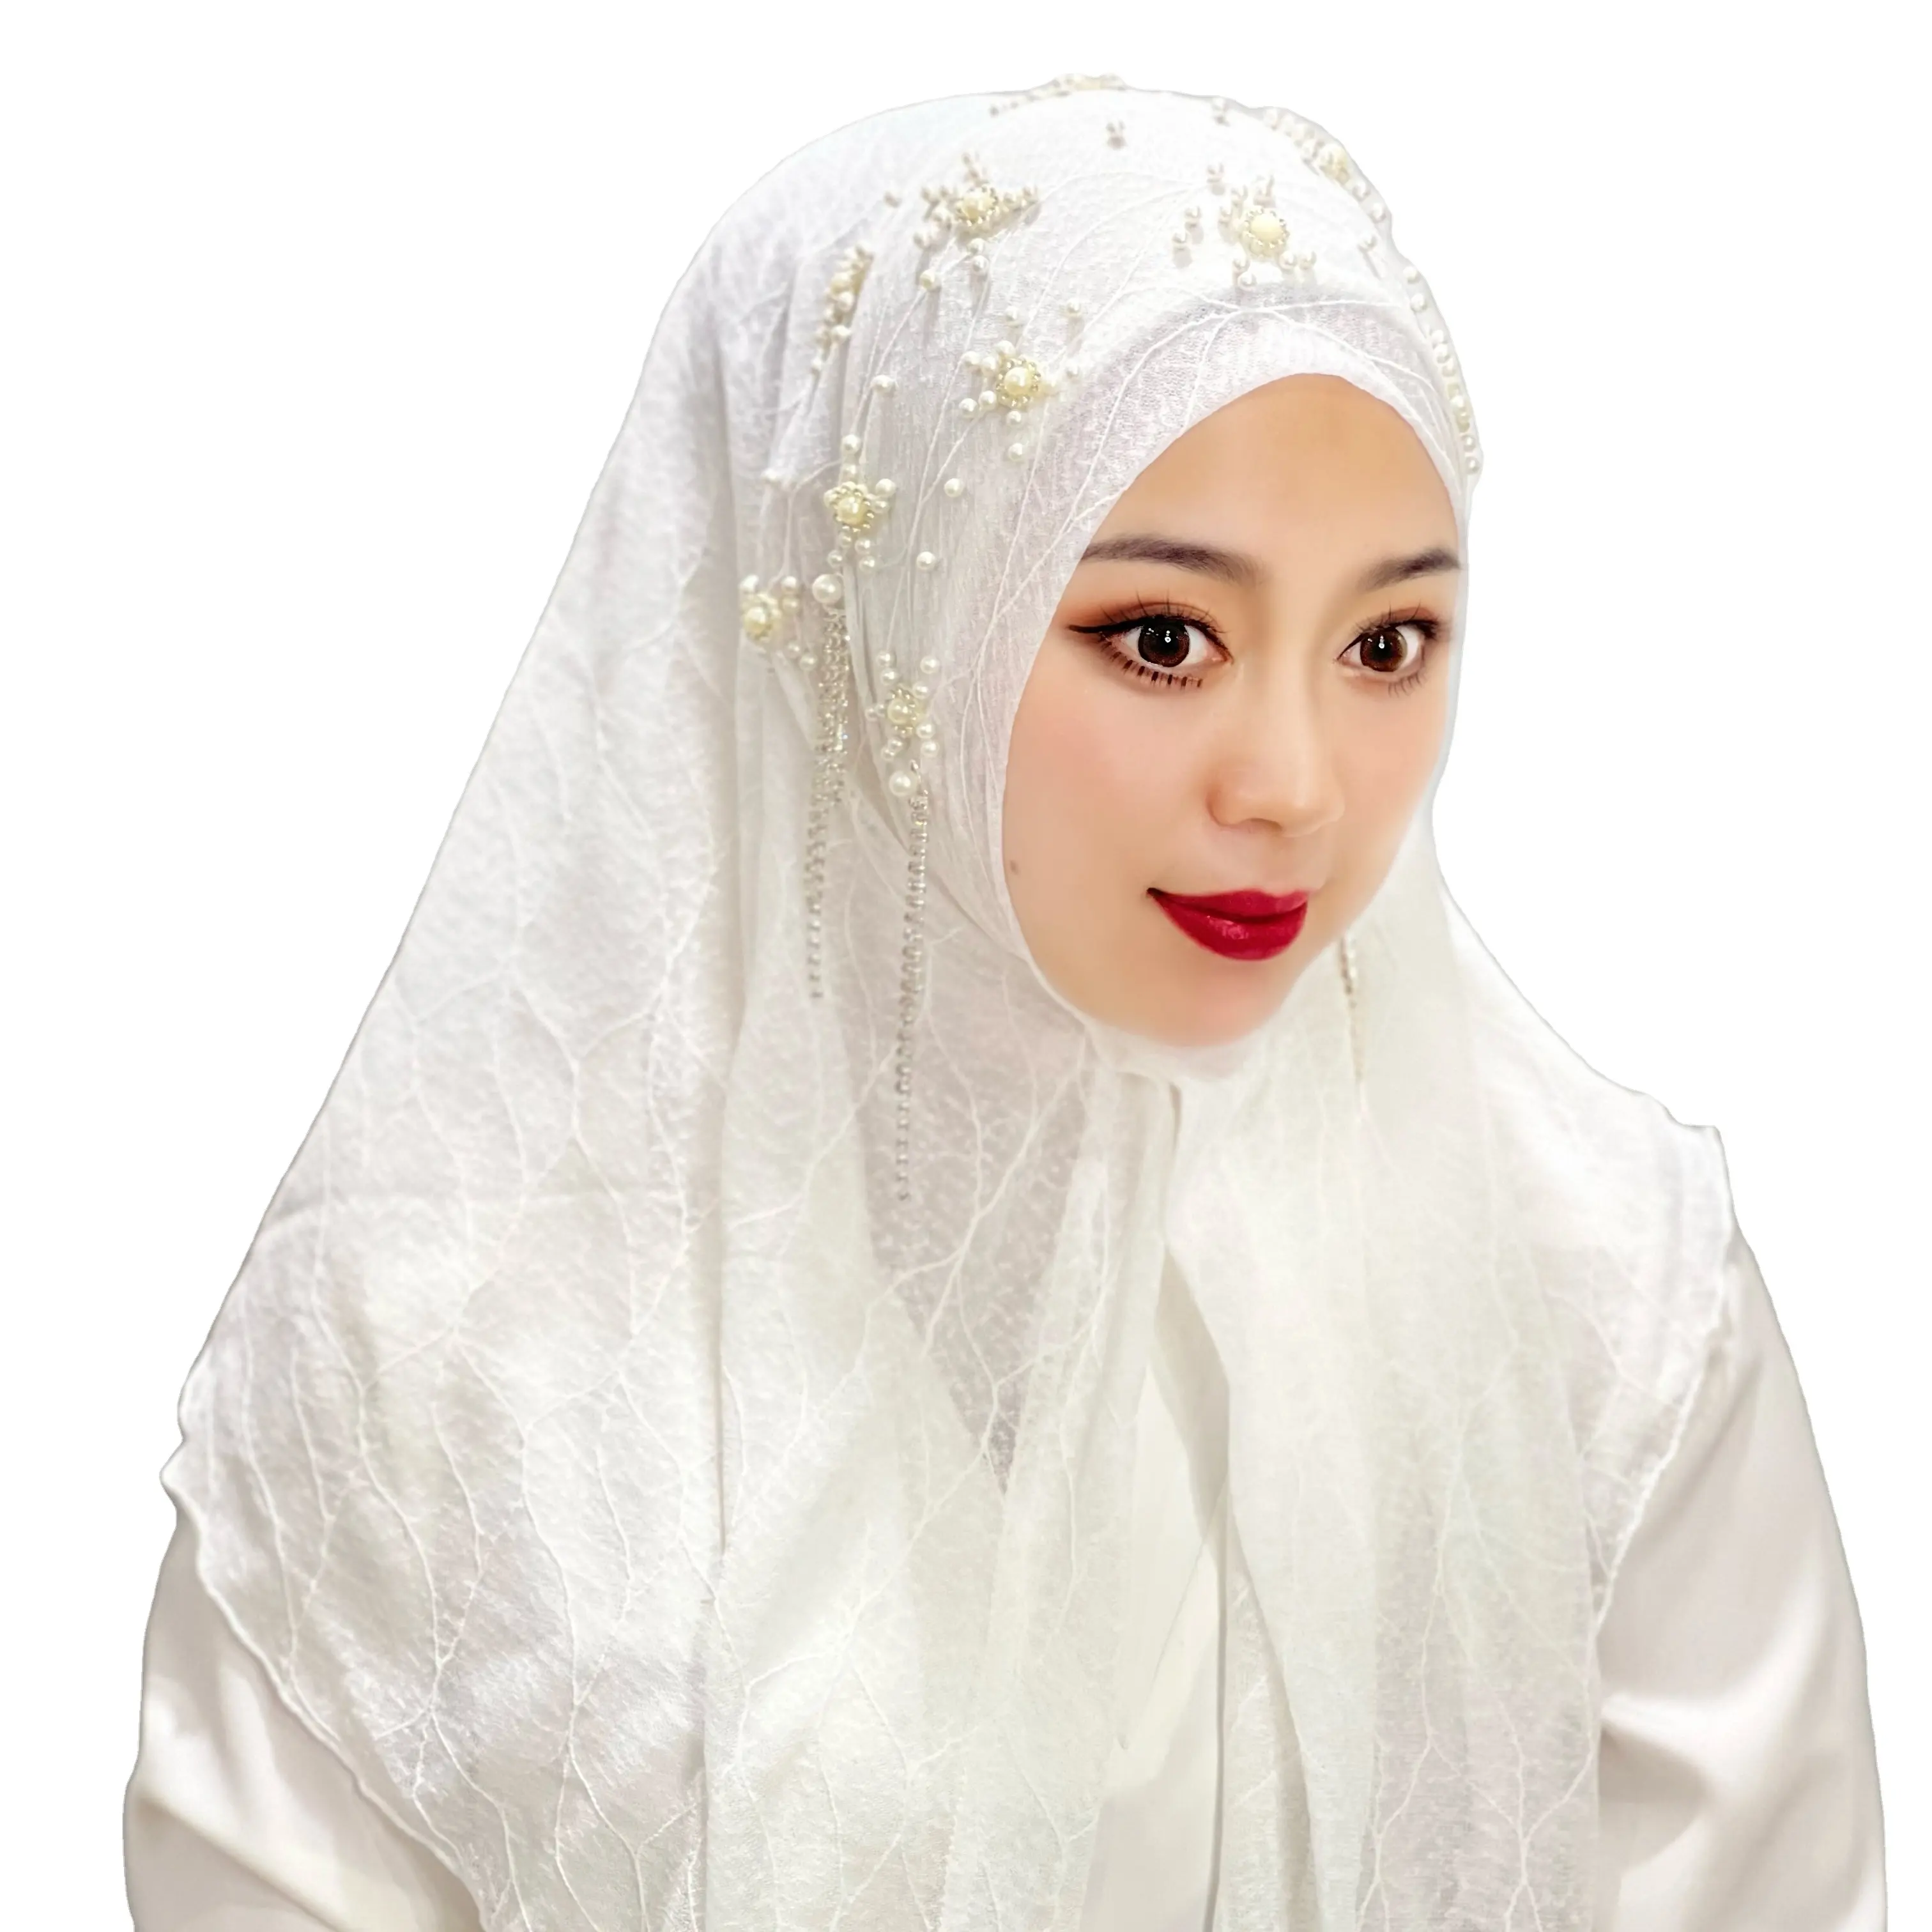 Fular kırışık hicap pileli püskül müslüman eşarp anlık başörtüsü kadınlar zarif modal toptan müslüman elbise başörtüsü